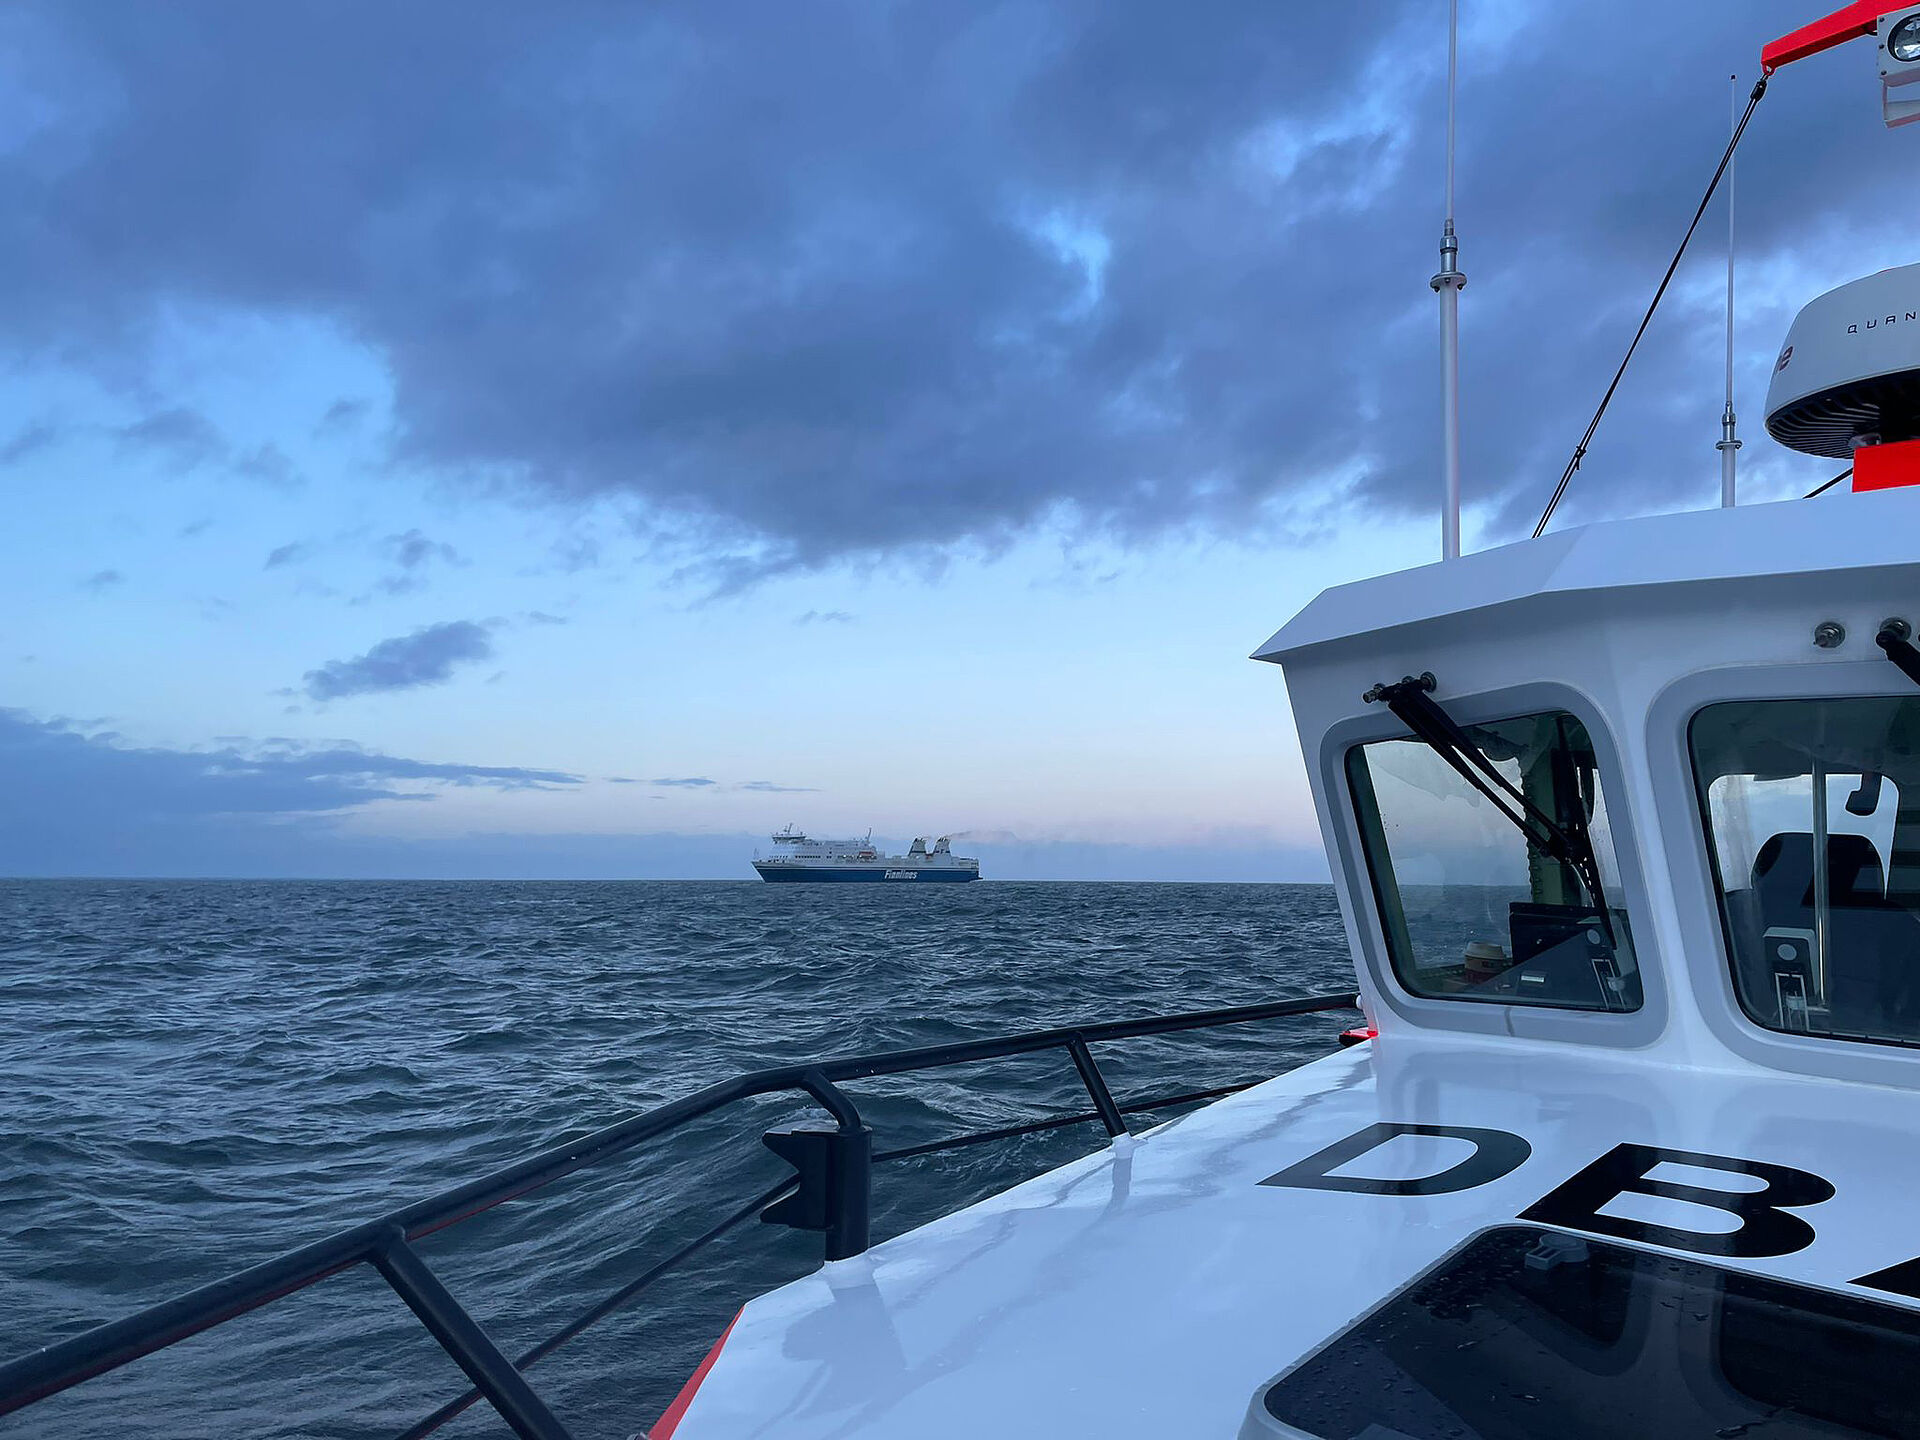 Seemann von Skandinavienfähre mit Hilfe der Seenotretter ins Krankenhaus ausgeflogen